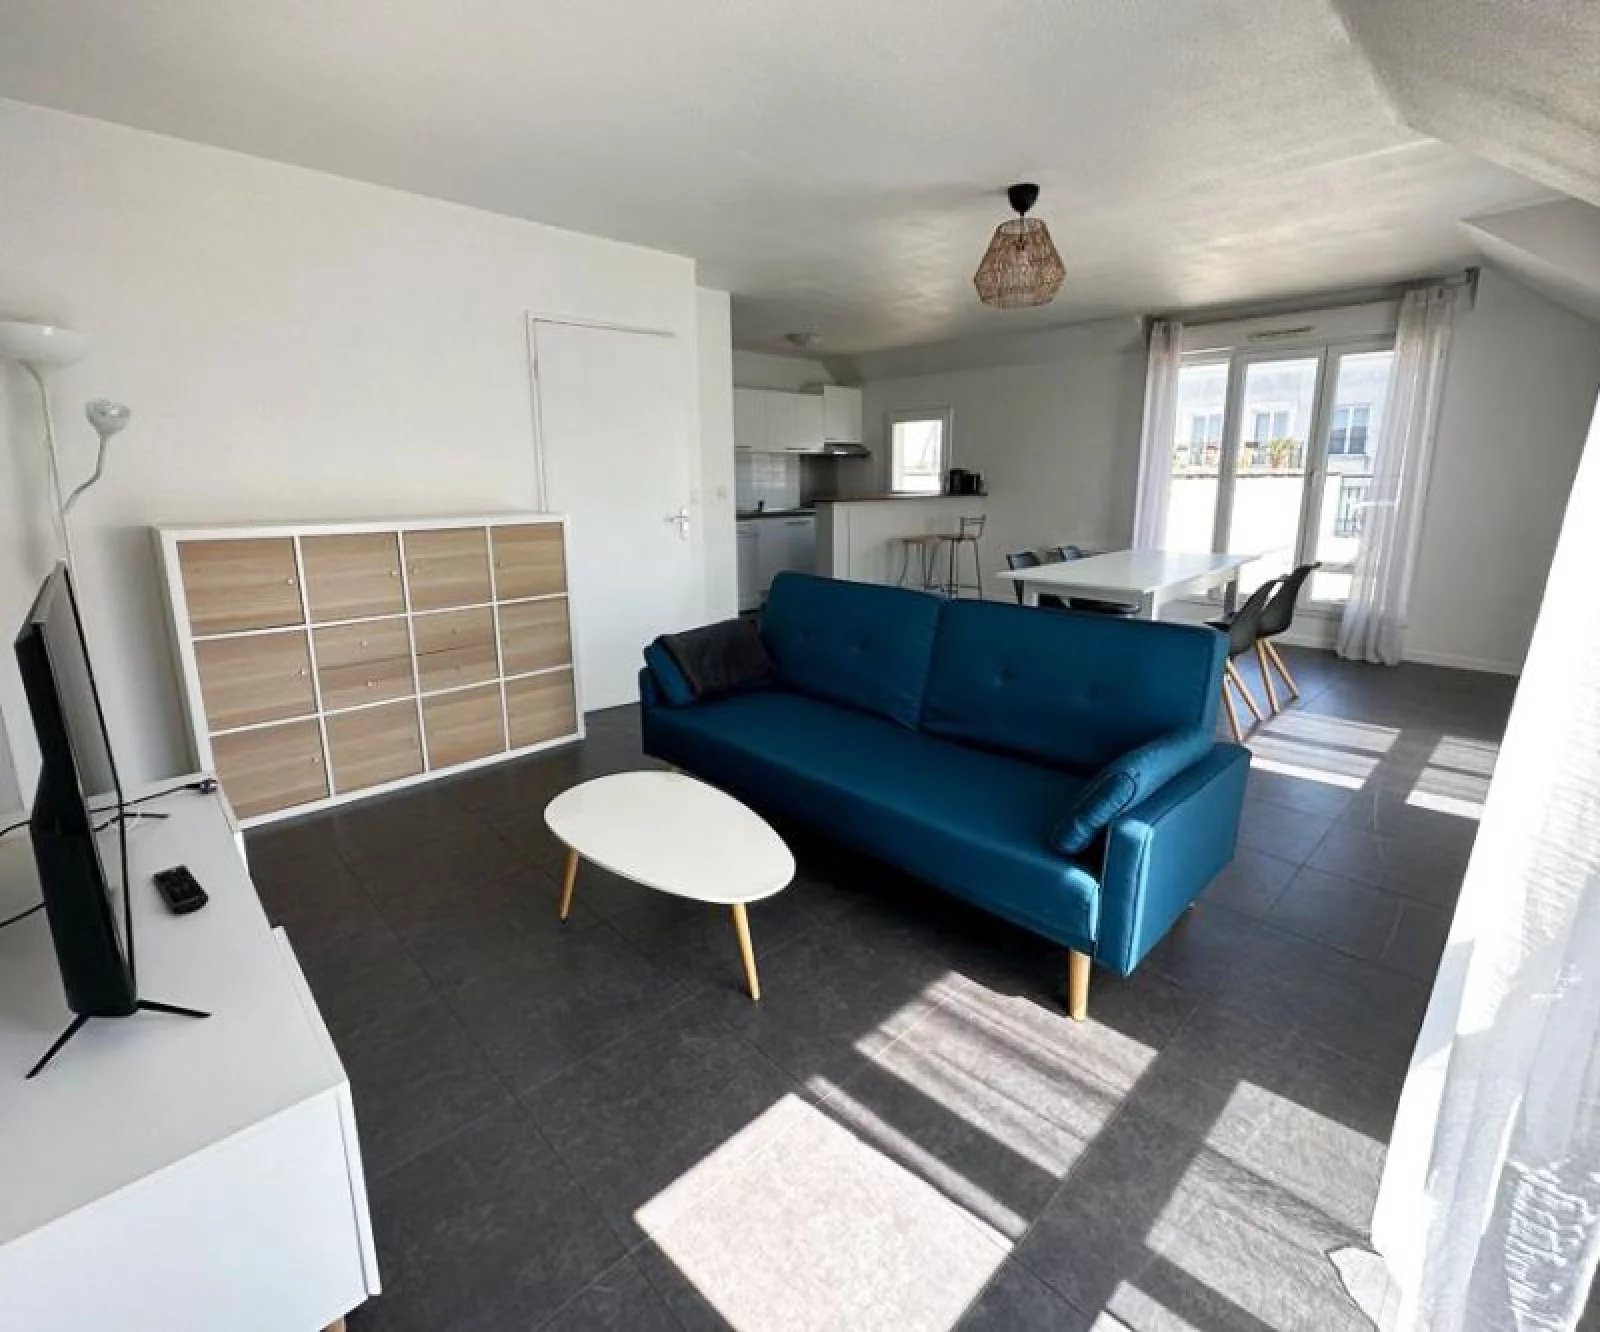 Location appartement duplex meublé 3 pièces 69m² (Paris Est / Bry sur Marne 94)